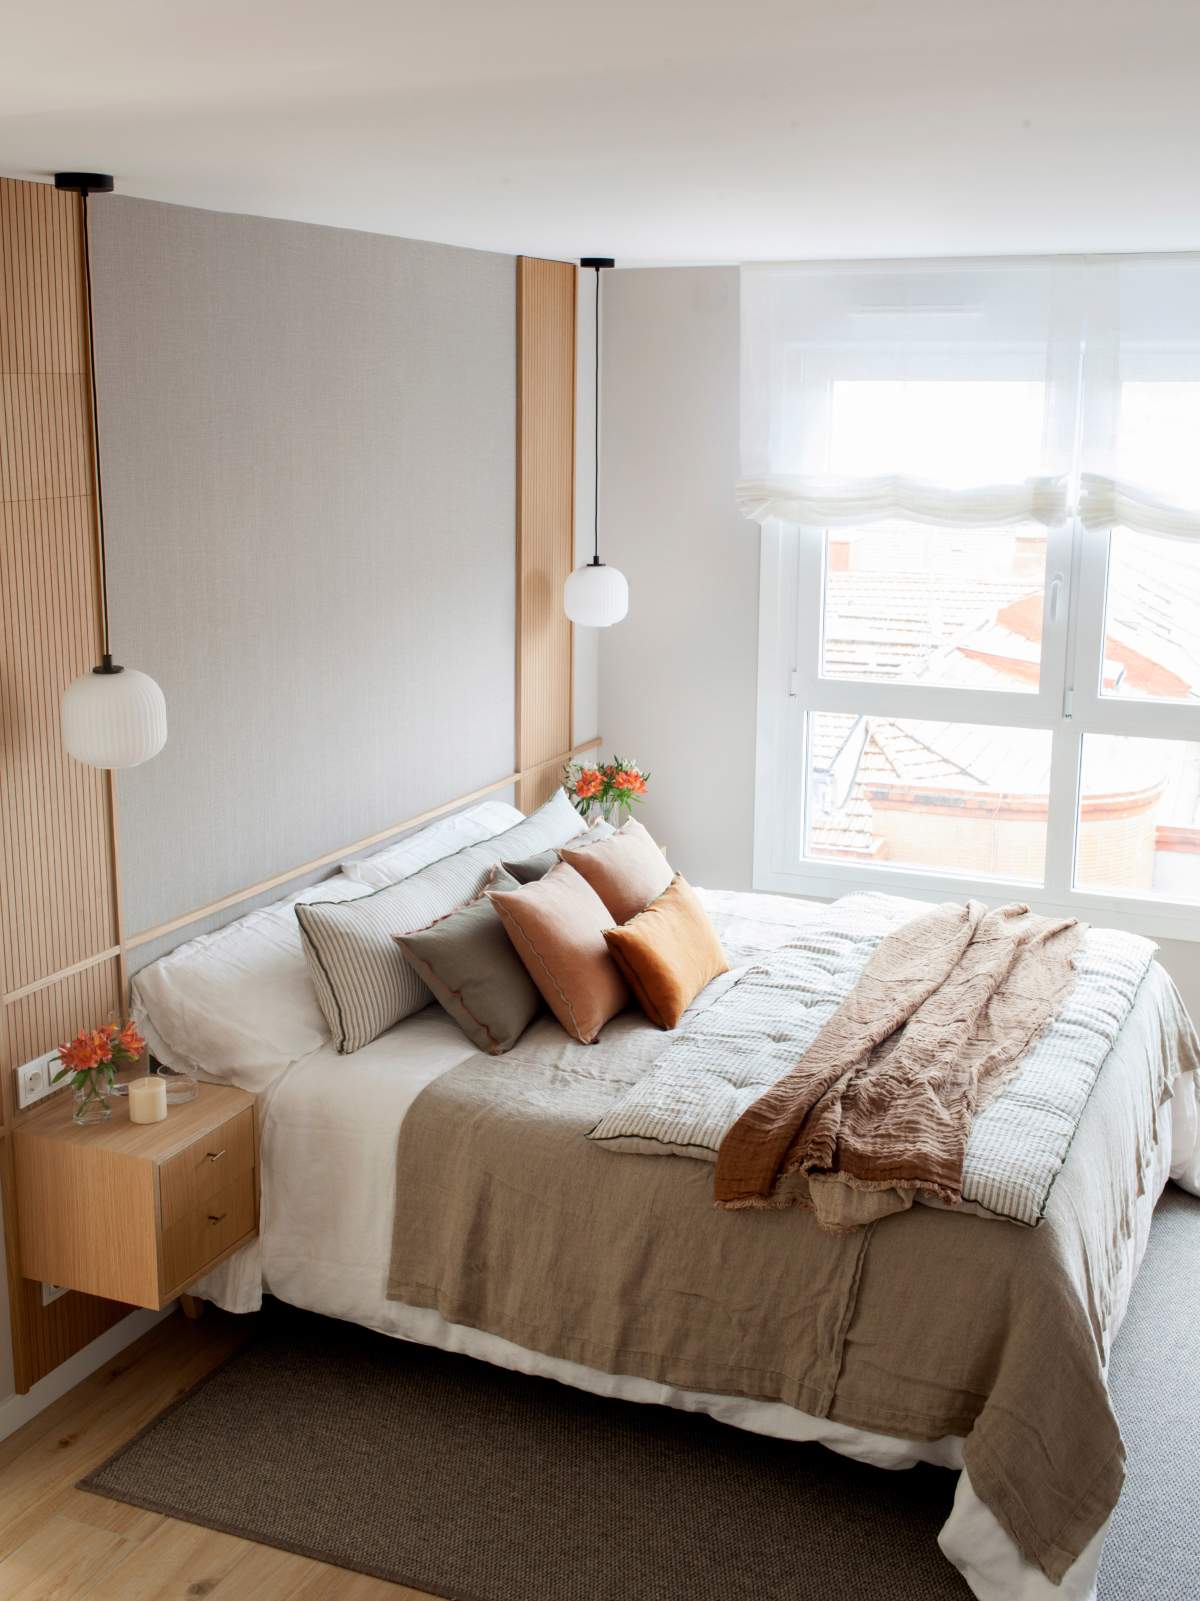 Dormitorio principal en tonos neutros con cojines a color.